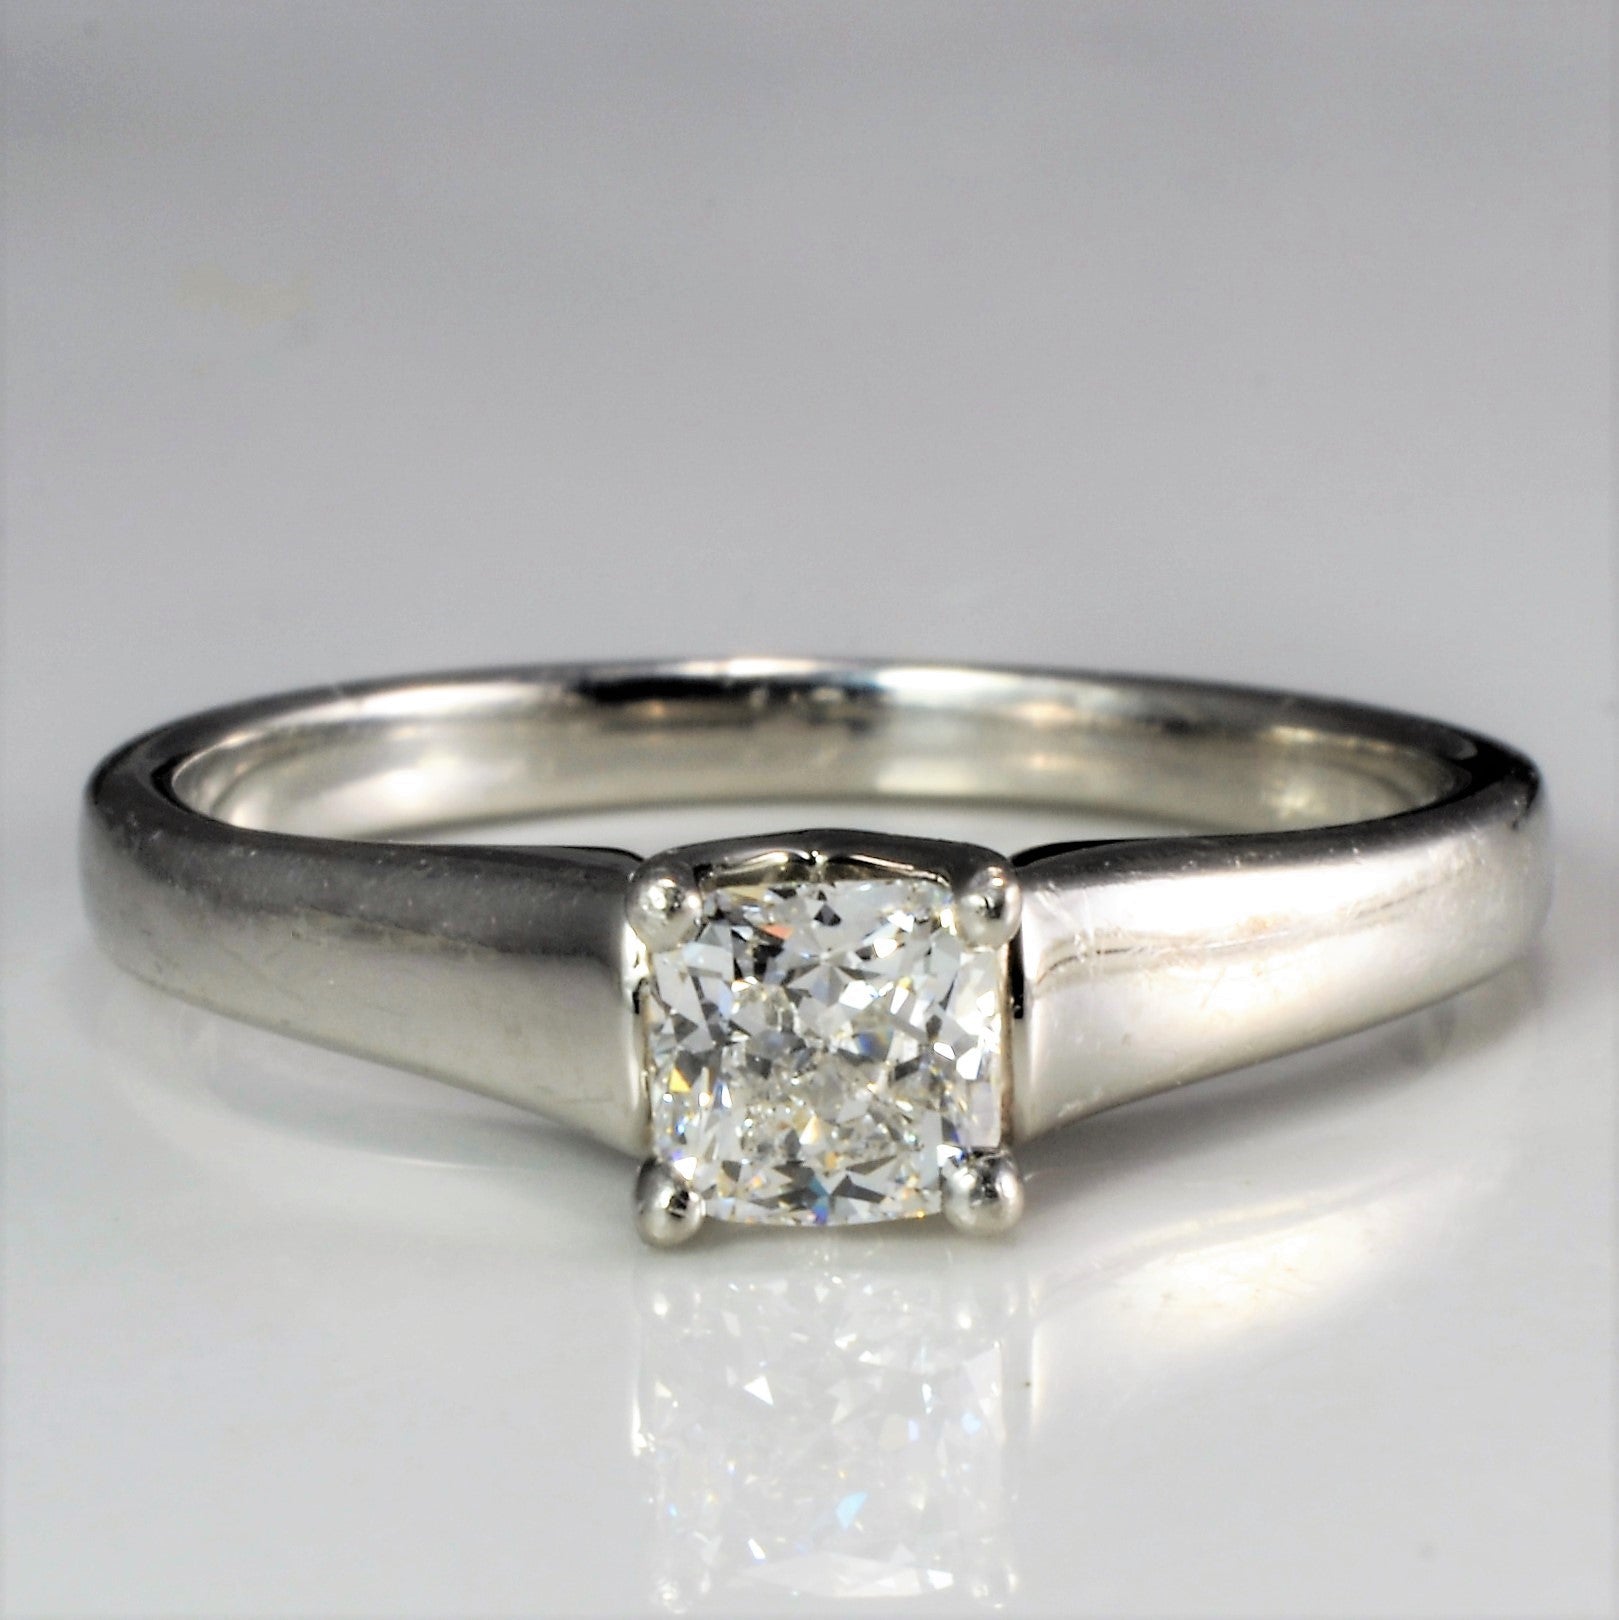 Birks' Amorique Solitaire Diamond Ring | 0.32 ct | SZ 5.5 |